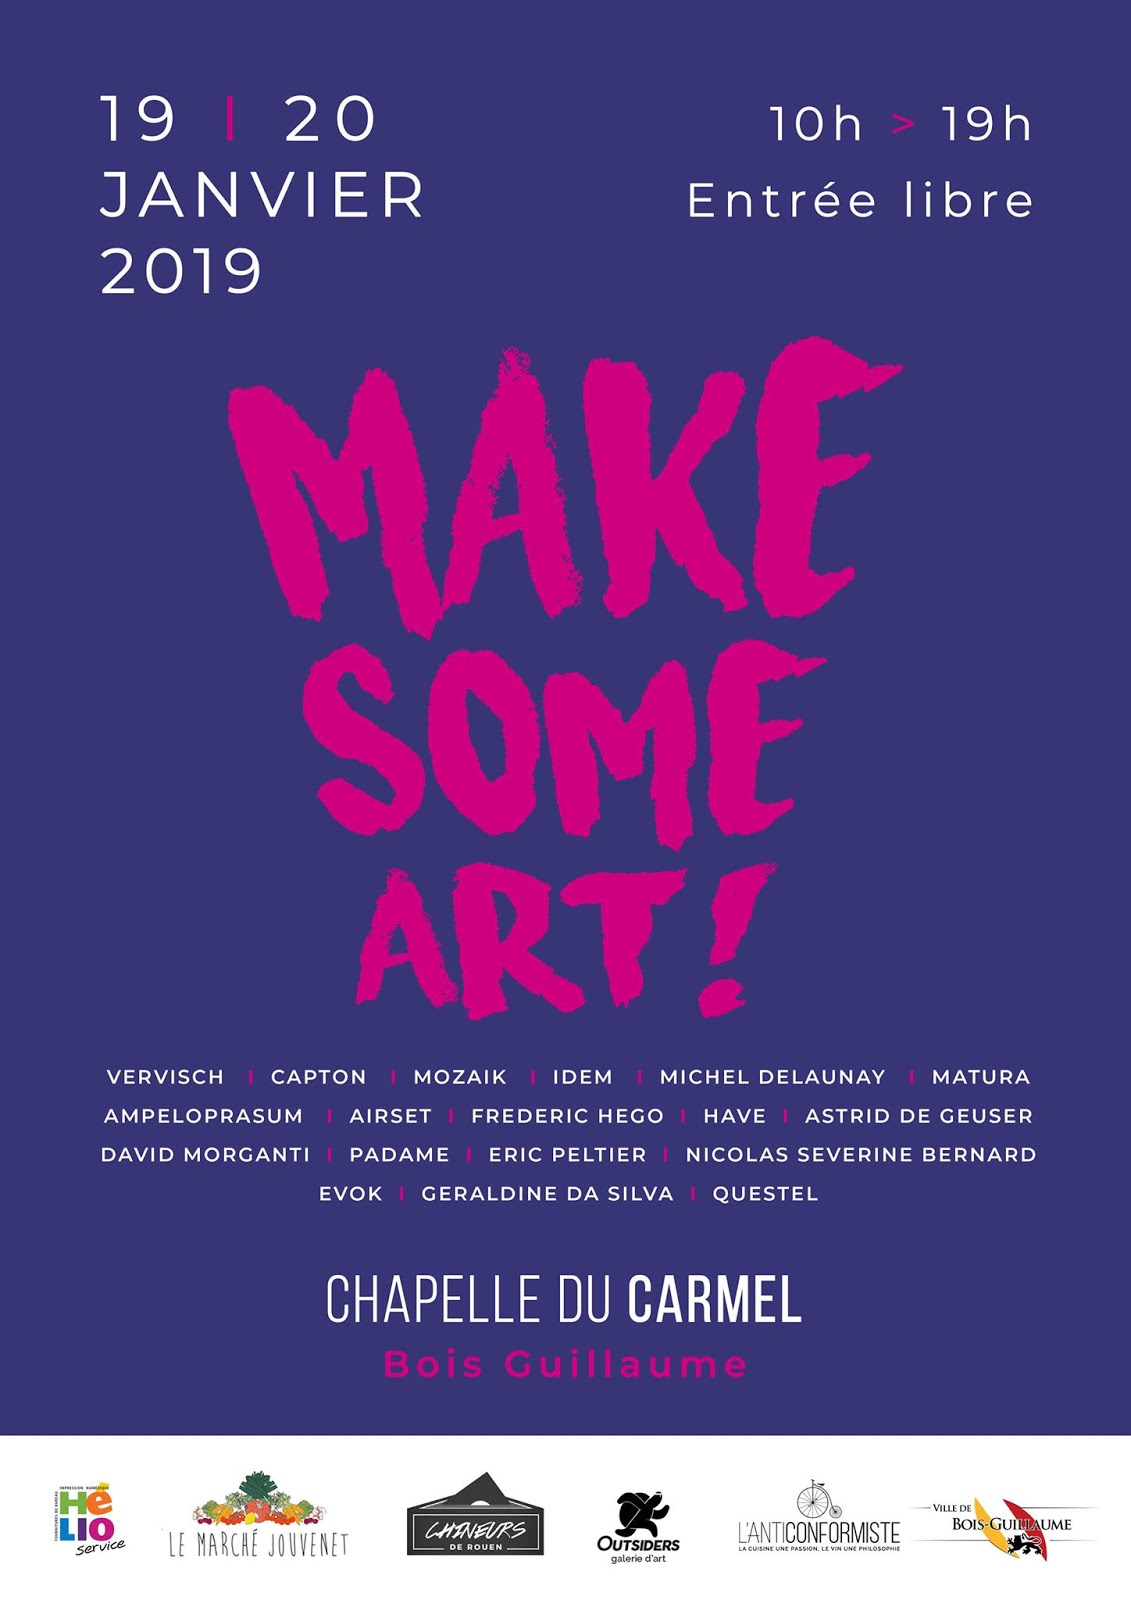 BOIS-GUILLAUME (AGGLO DE ROUEN) : CAPTON INVITÉ D'HONNEUR DE "MAKE SOME ART"